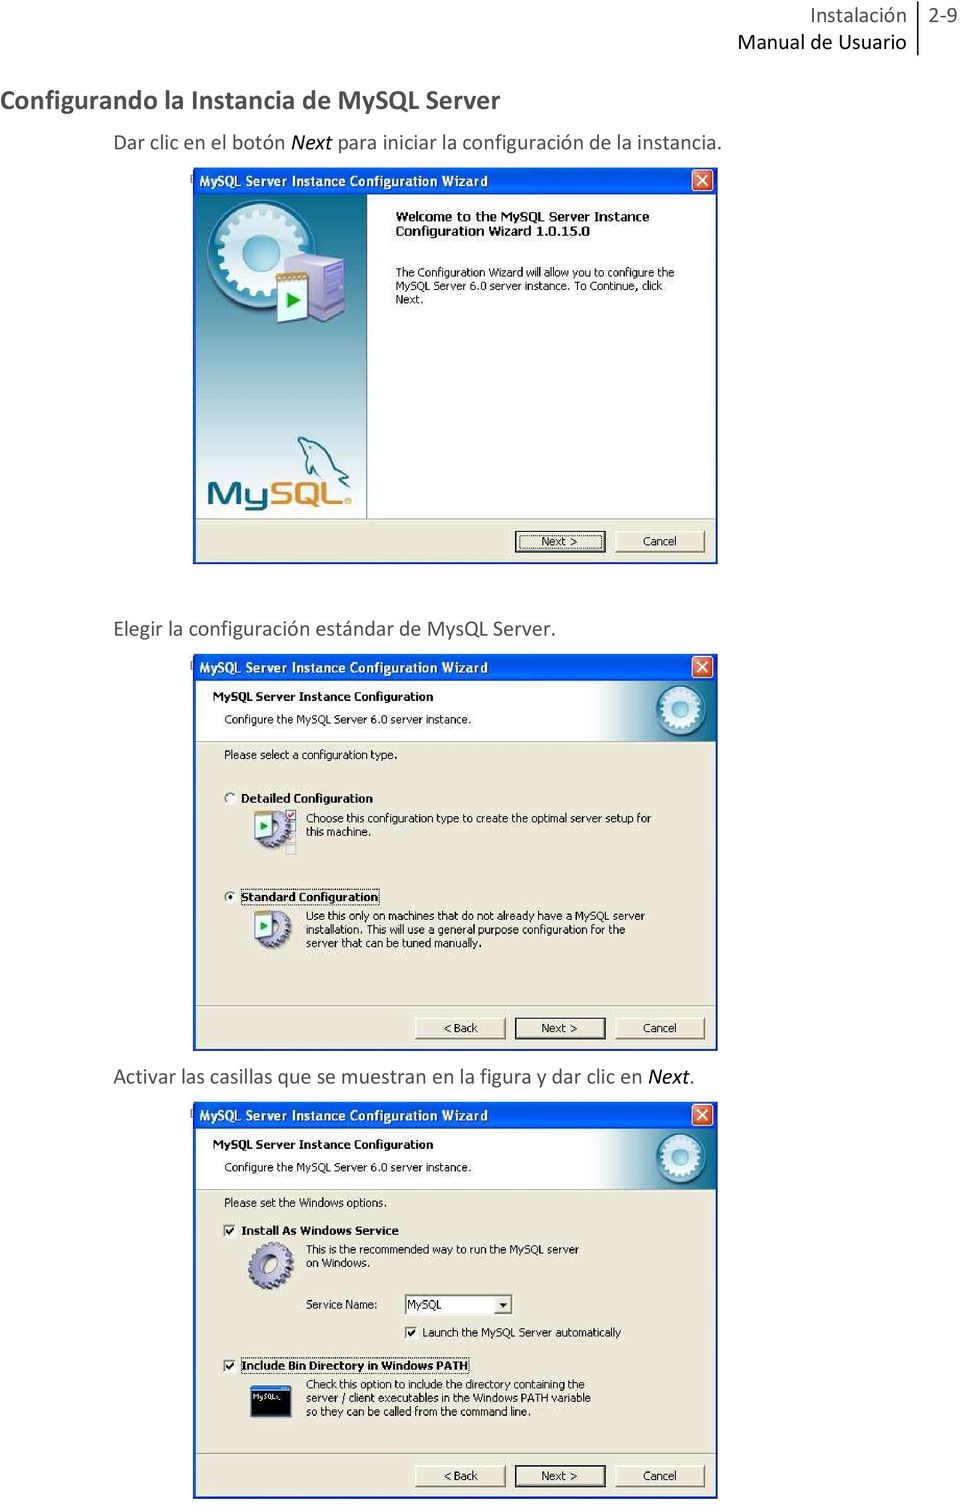 Elegir la configuración estándar de MysQL Server.